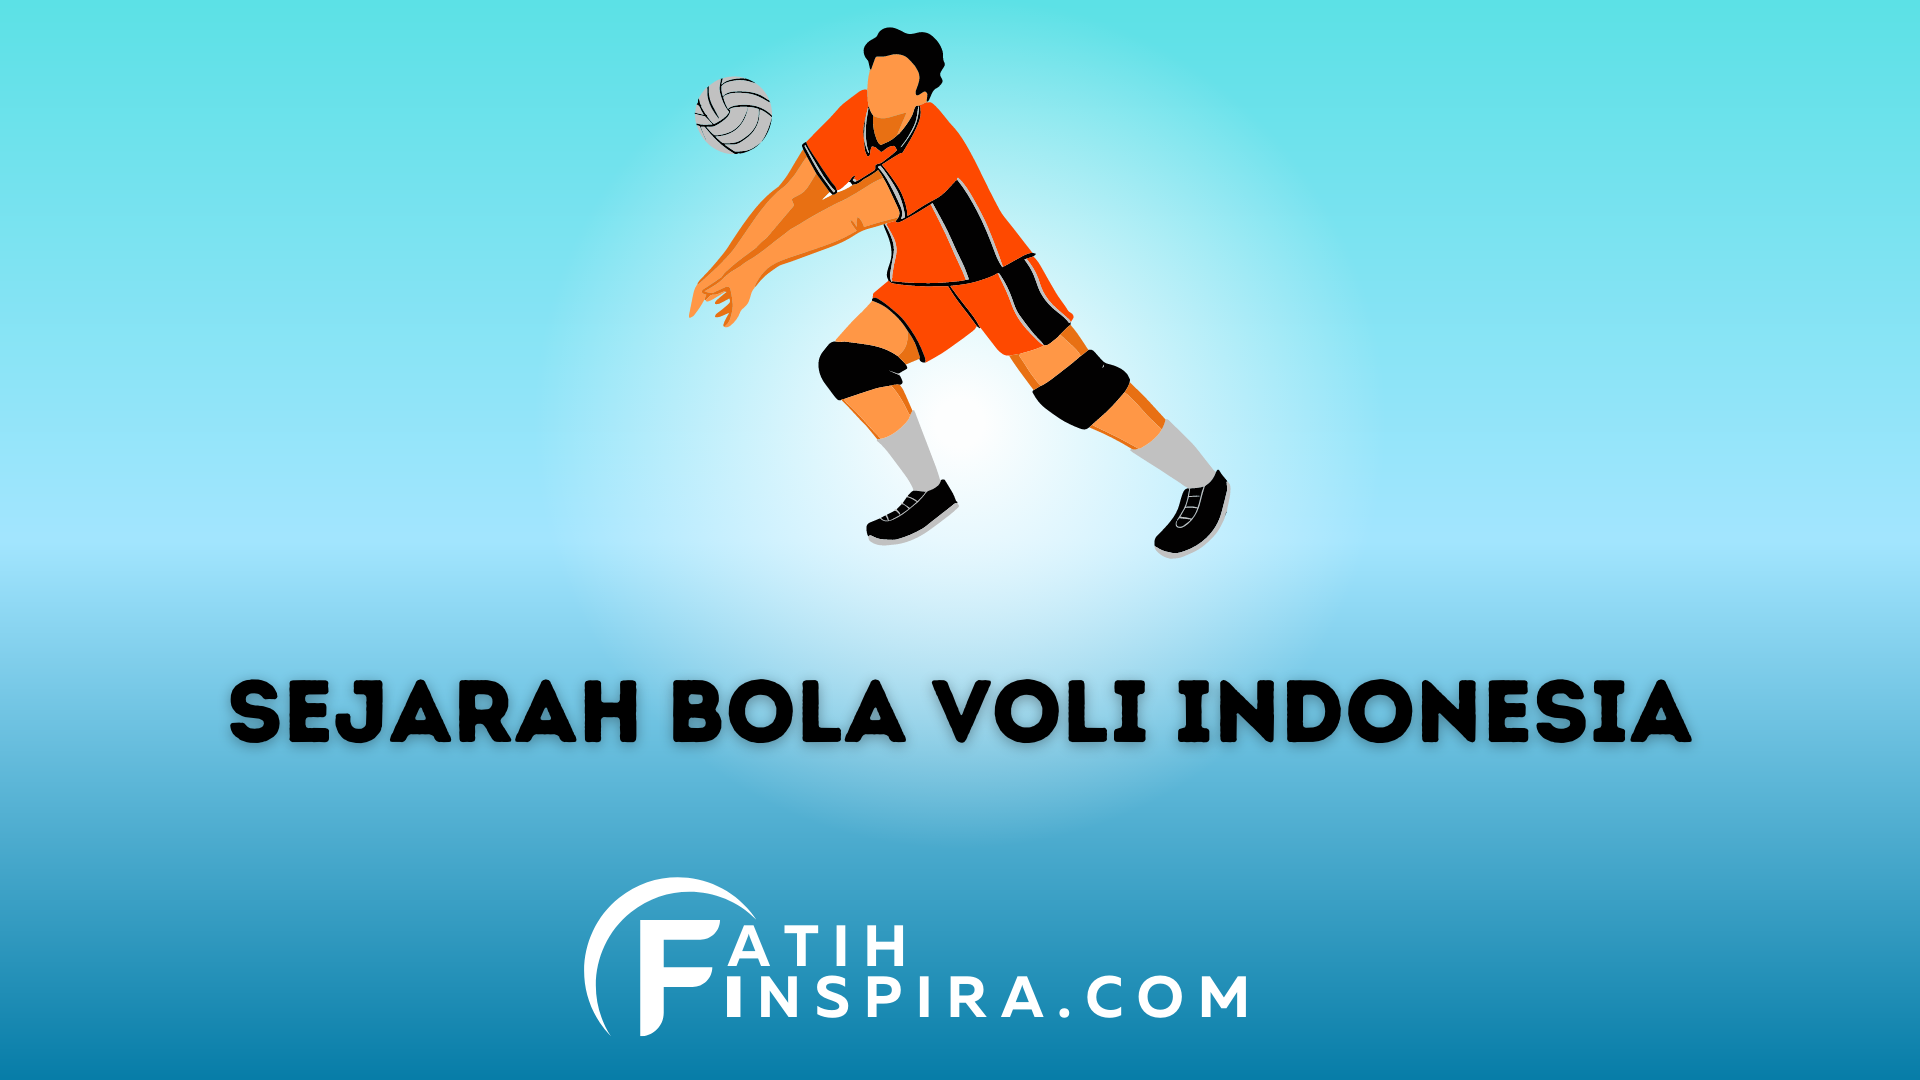 Inilah Sejarah Bola Voli Indonesia Perkembangan dan Prestasi